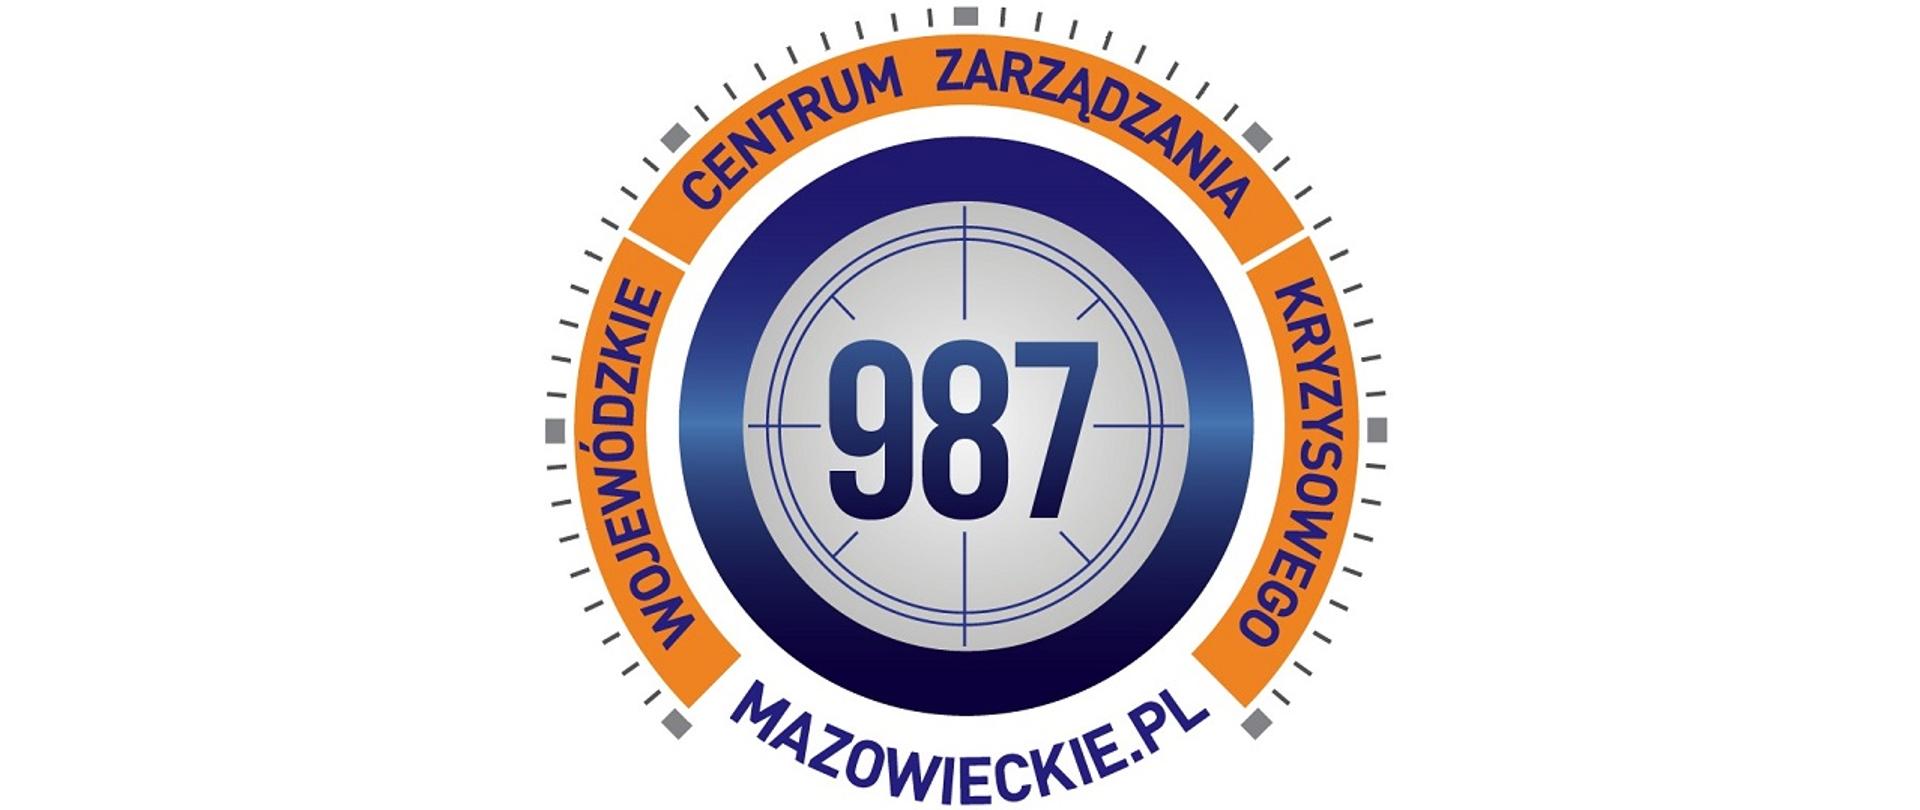 Grafika przedstawia logotyp Wojewódzkiego Centrum Zarządzania Kryzysowego, w szarym kole z granatowym obwodem wpisany numer infolinii 987, na około numeru w pomarańczowym obwodzie napis Wojewódzkie Centrum Zarządzania Kryzysowego. Całość wygląda jak tarcza zegara. 